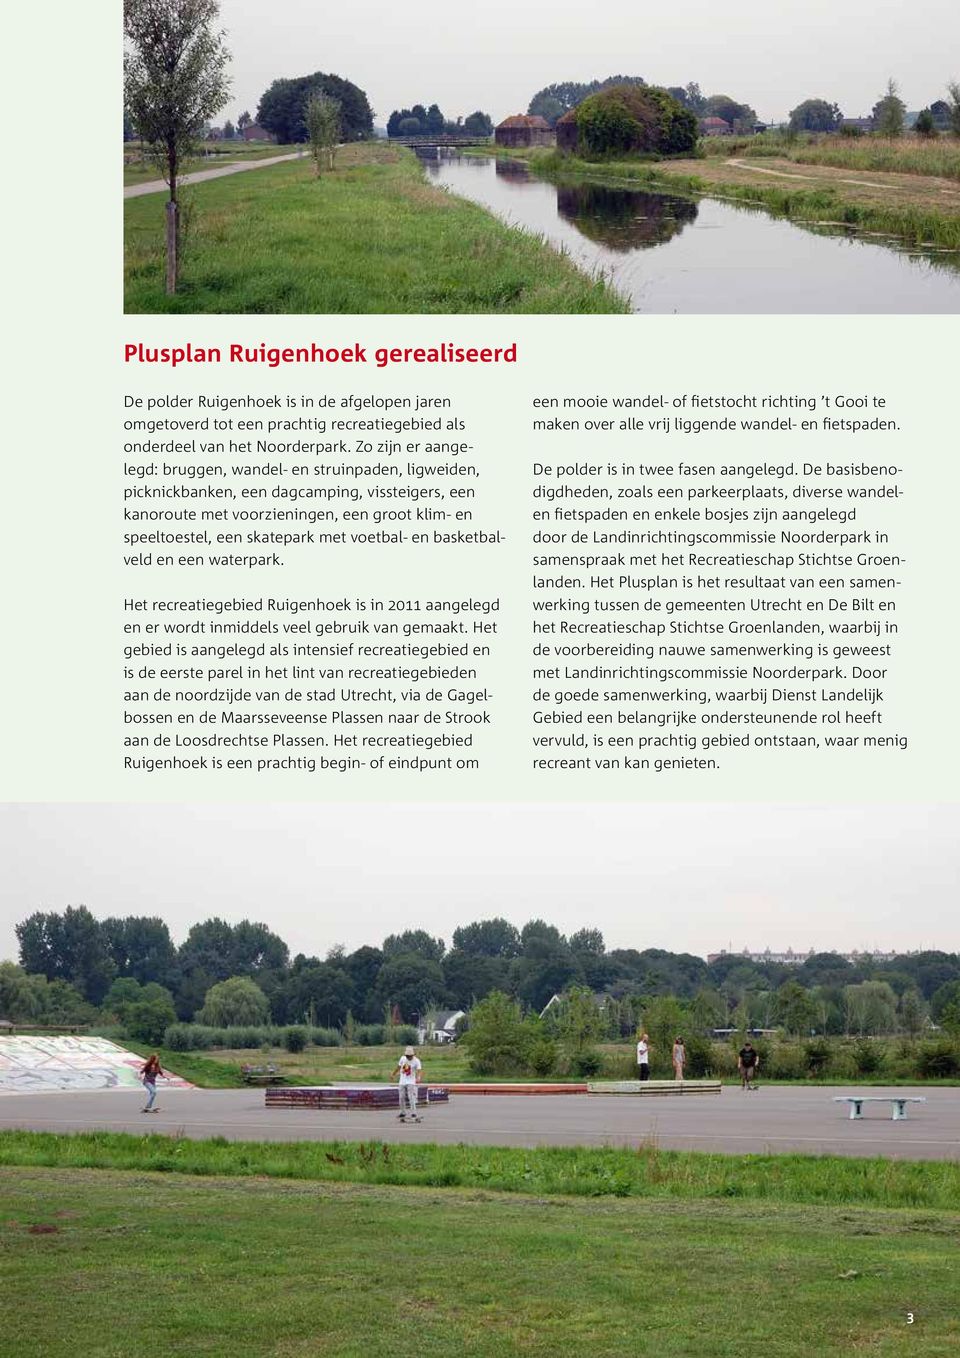 voetbal- en basketbalveld en een waterpark. Het recreatiegebied Ruigenhoek is in 2011 aangelegd en er wordt inmiddels veel gebruik van gemaakt.